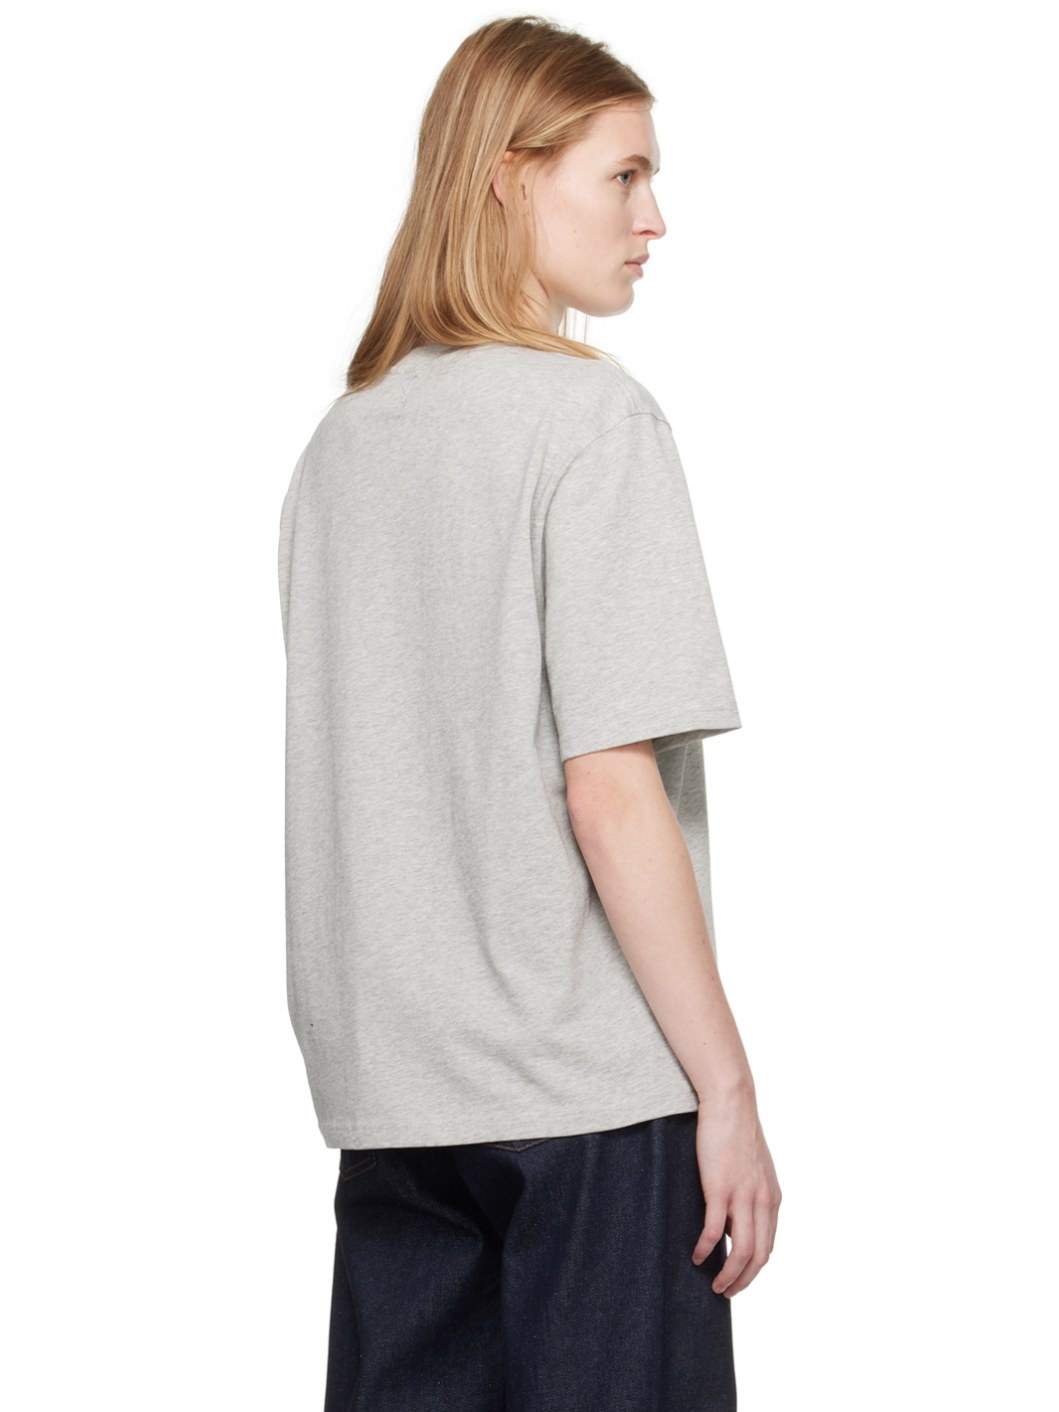 Gray Crewneck T-Shirt - 3